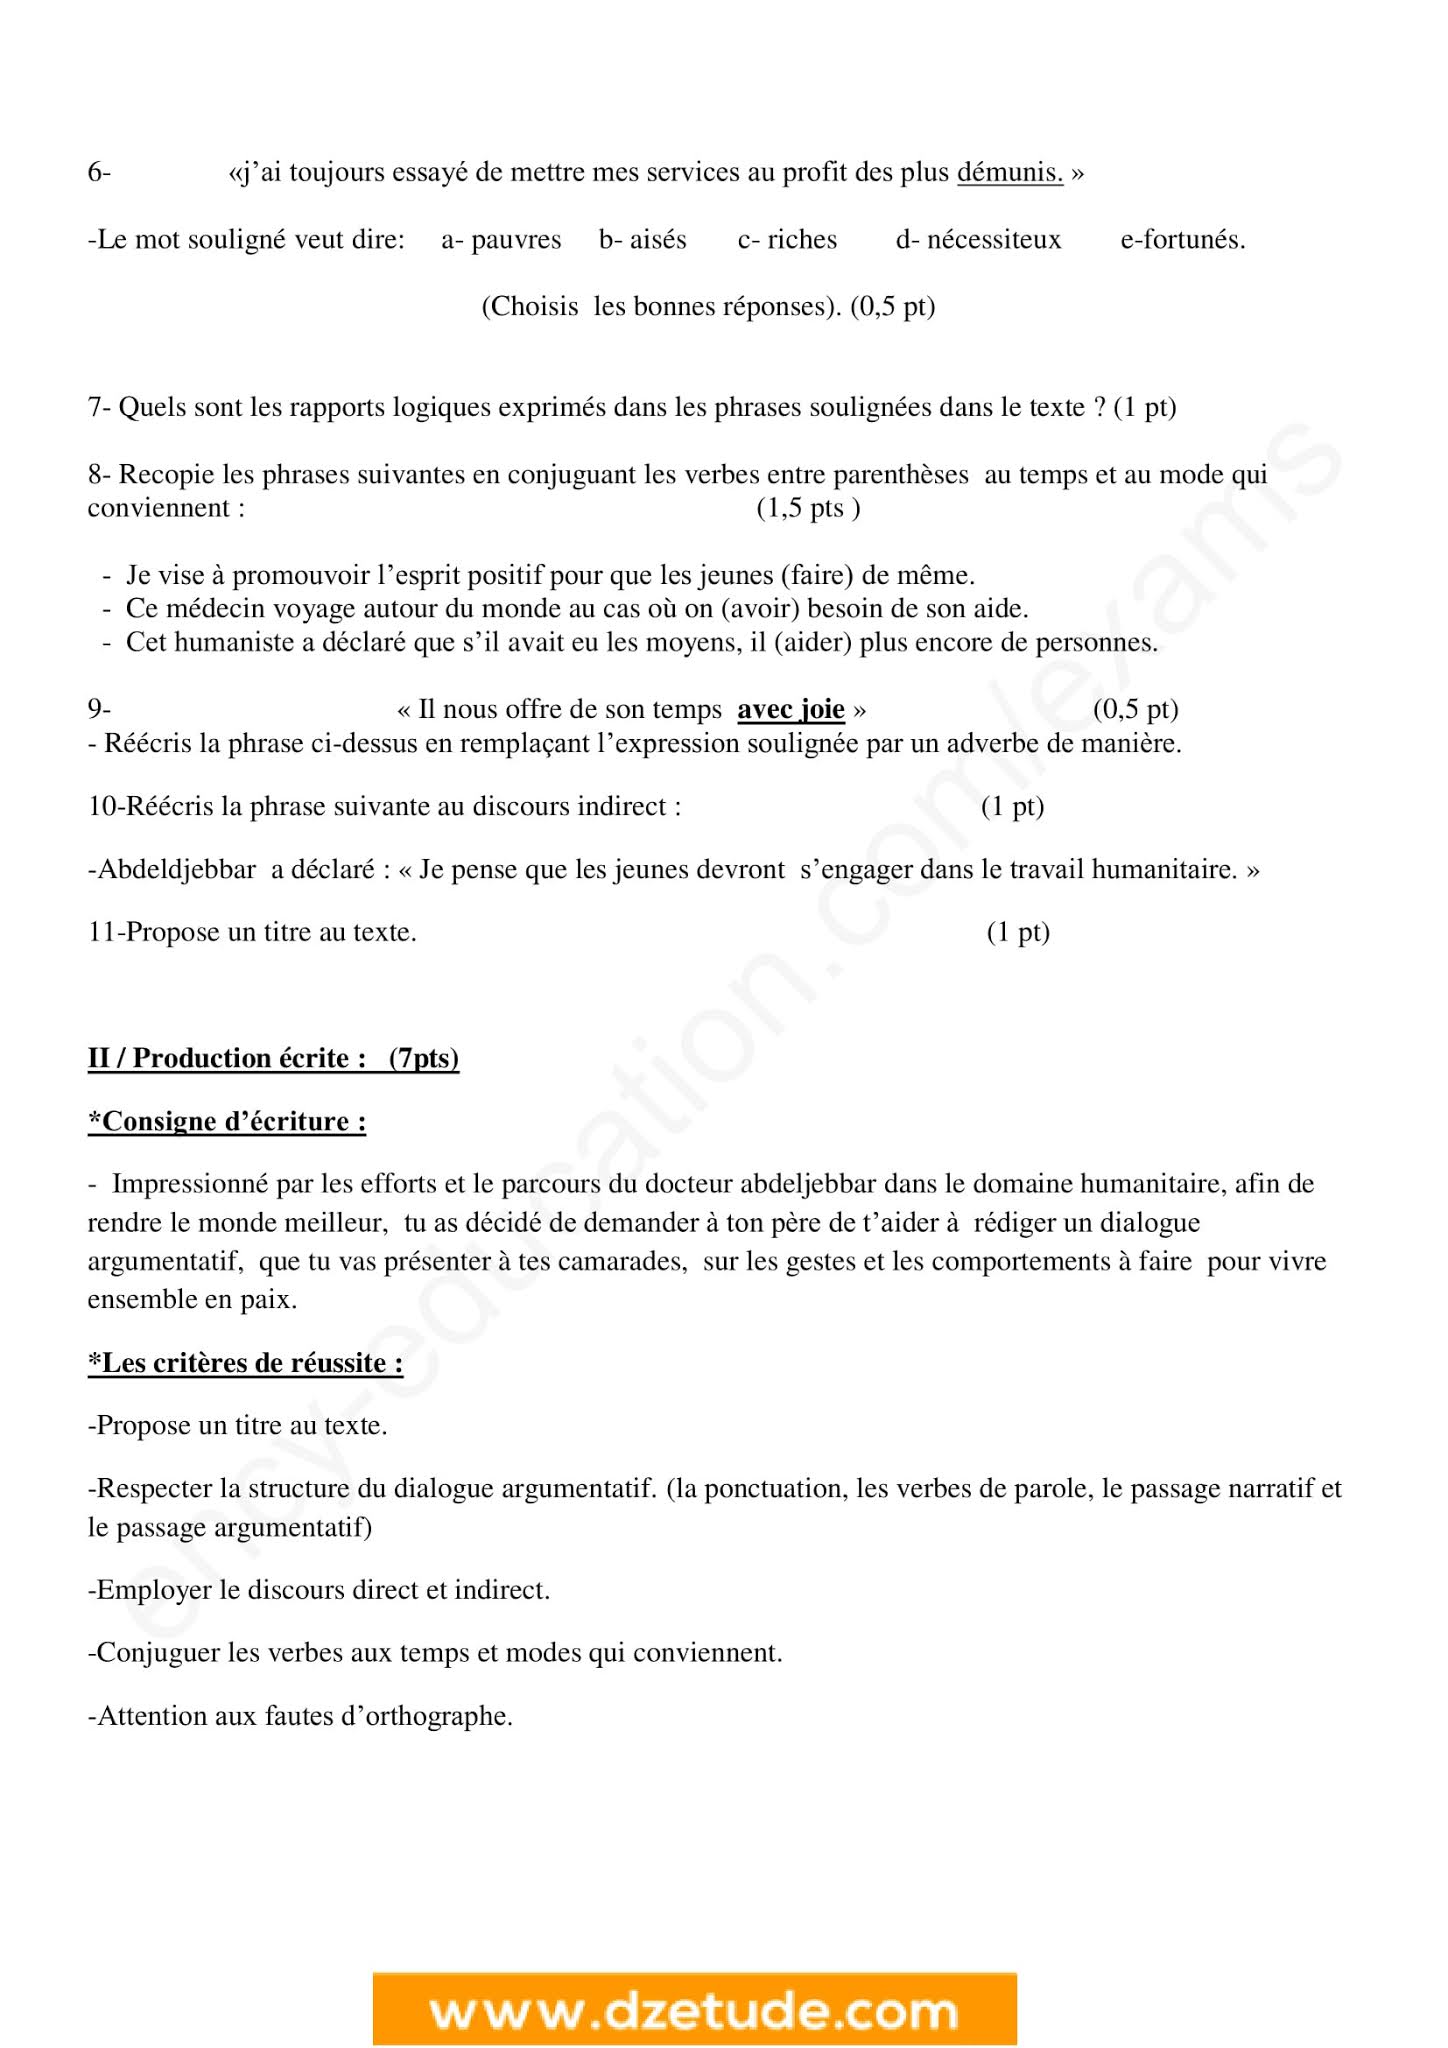 إختبار اللغة الفرنسية الفصل الثاني للسنة الرابعة متوسط - الجيل الثاني نموذج 2